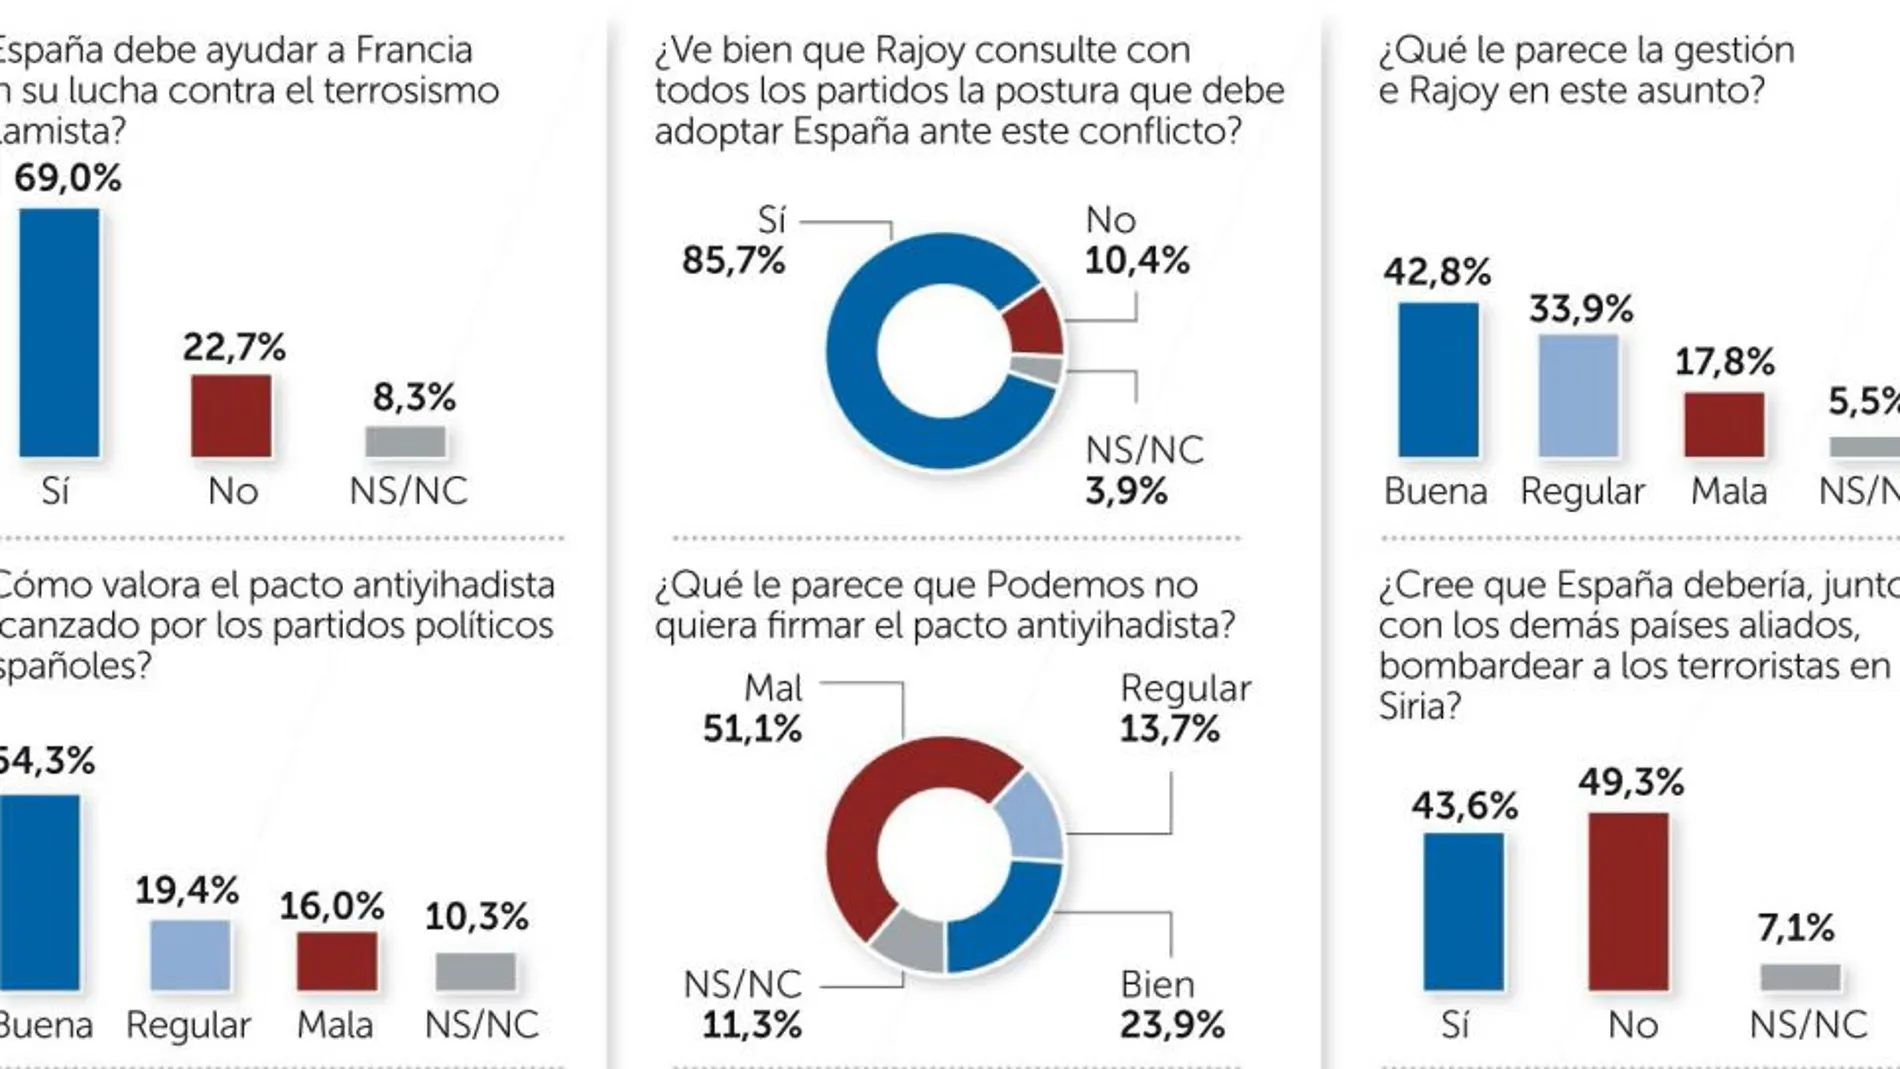 El 69% de los españoles apoya ayudar a Francia contra el yihadismo